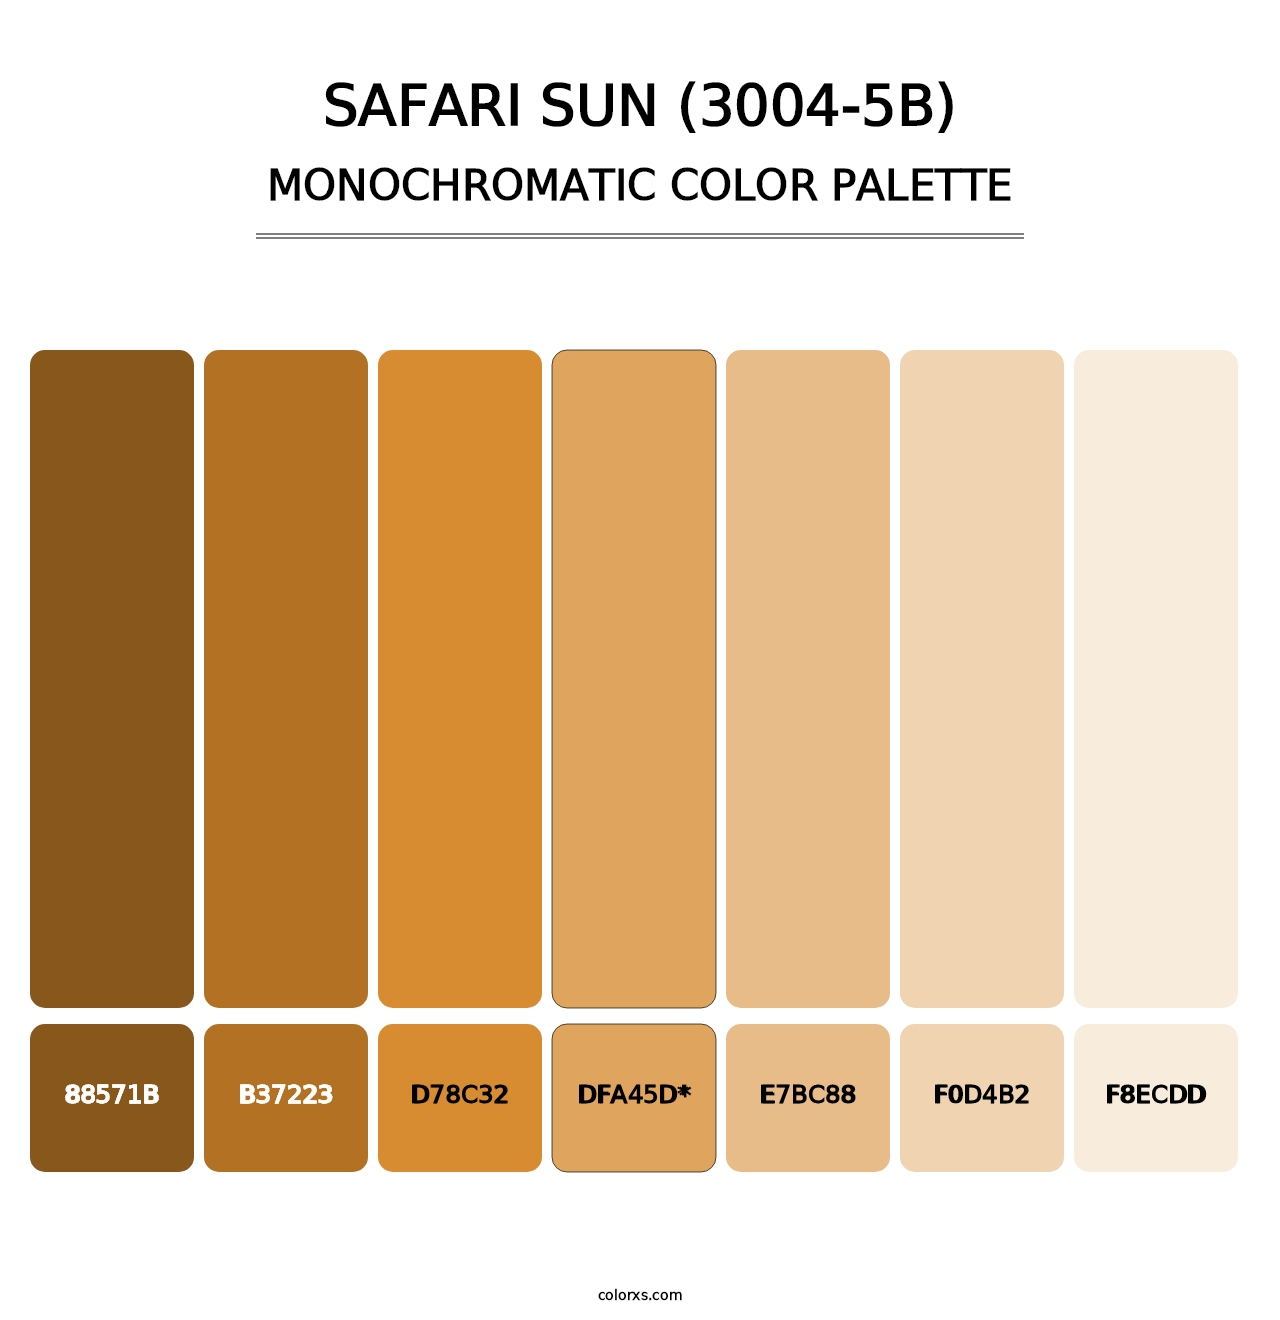 Safari Sun (3004-5B) - Monochromatic Color Palette